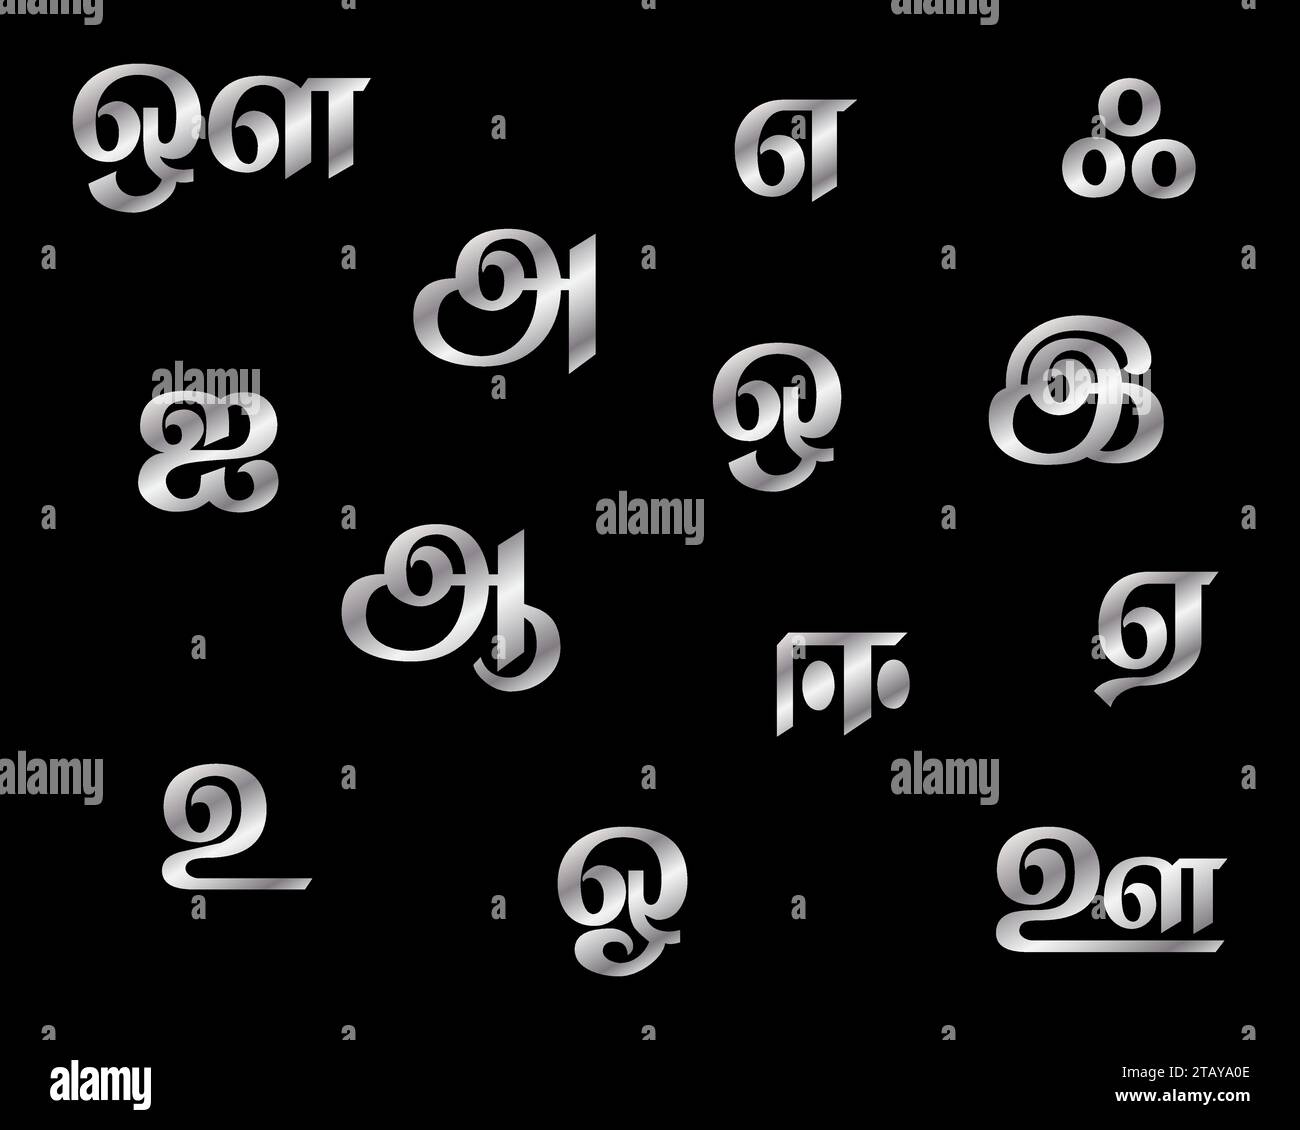 Tamil Vokale Buchstaben Vektor Illustration Stock Vektor